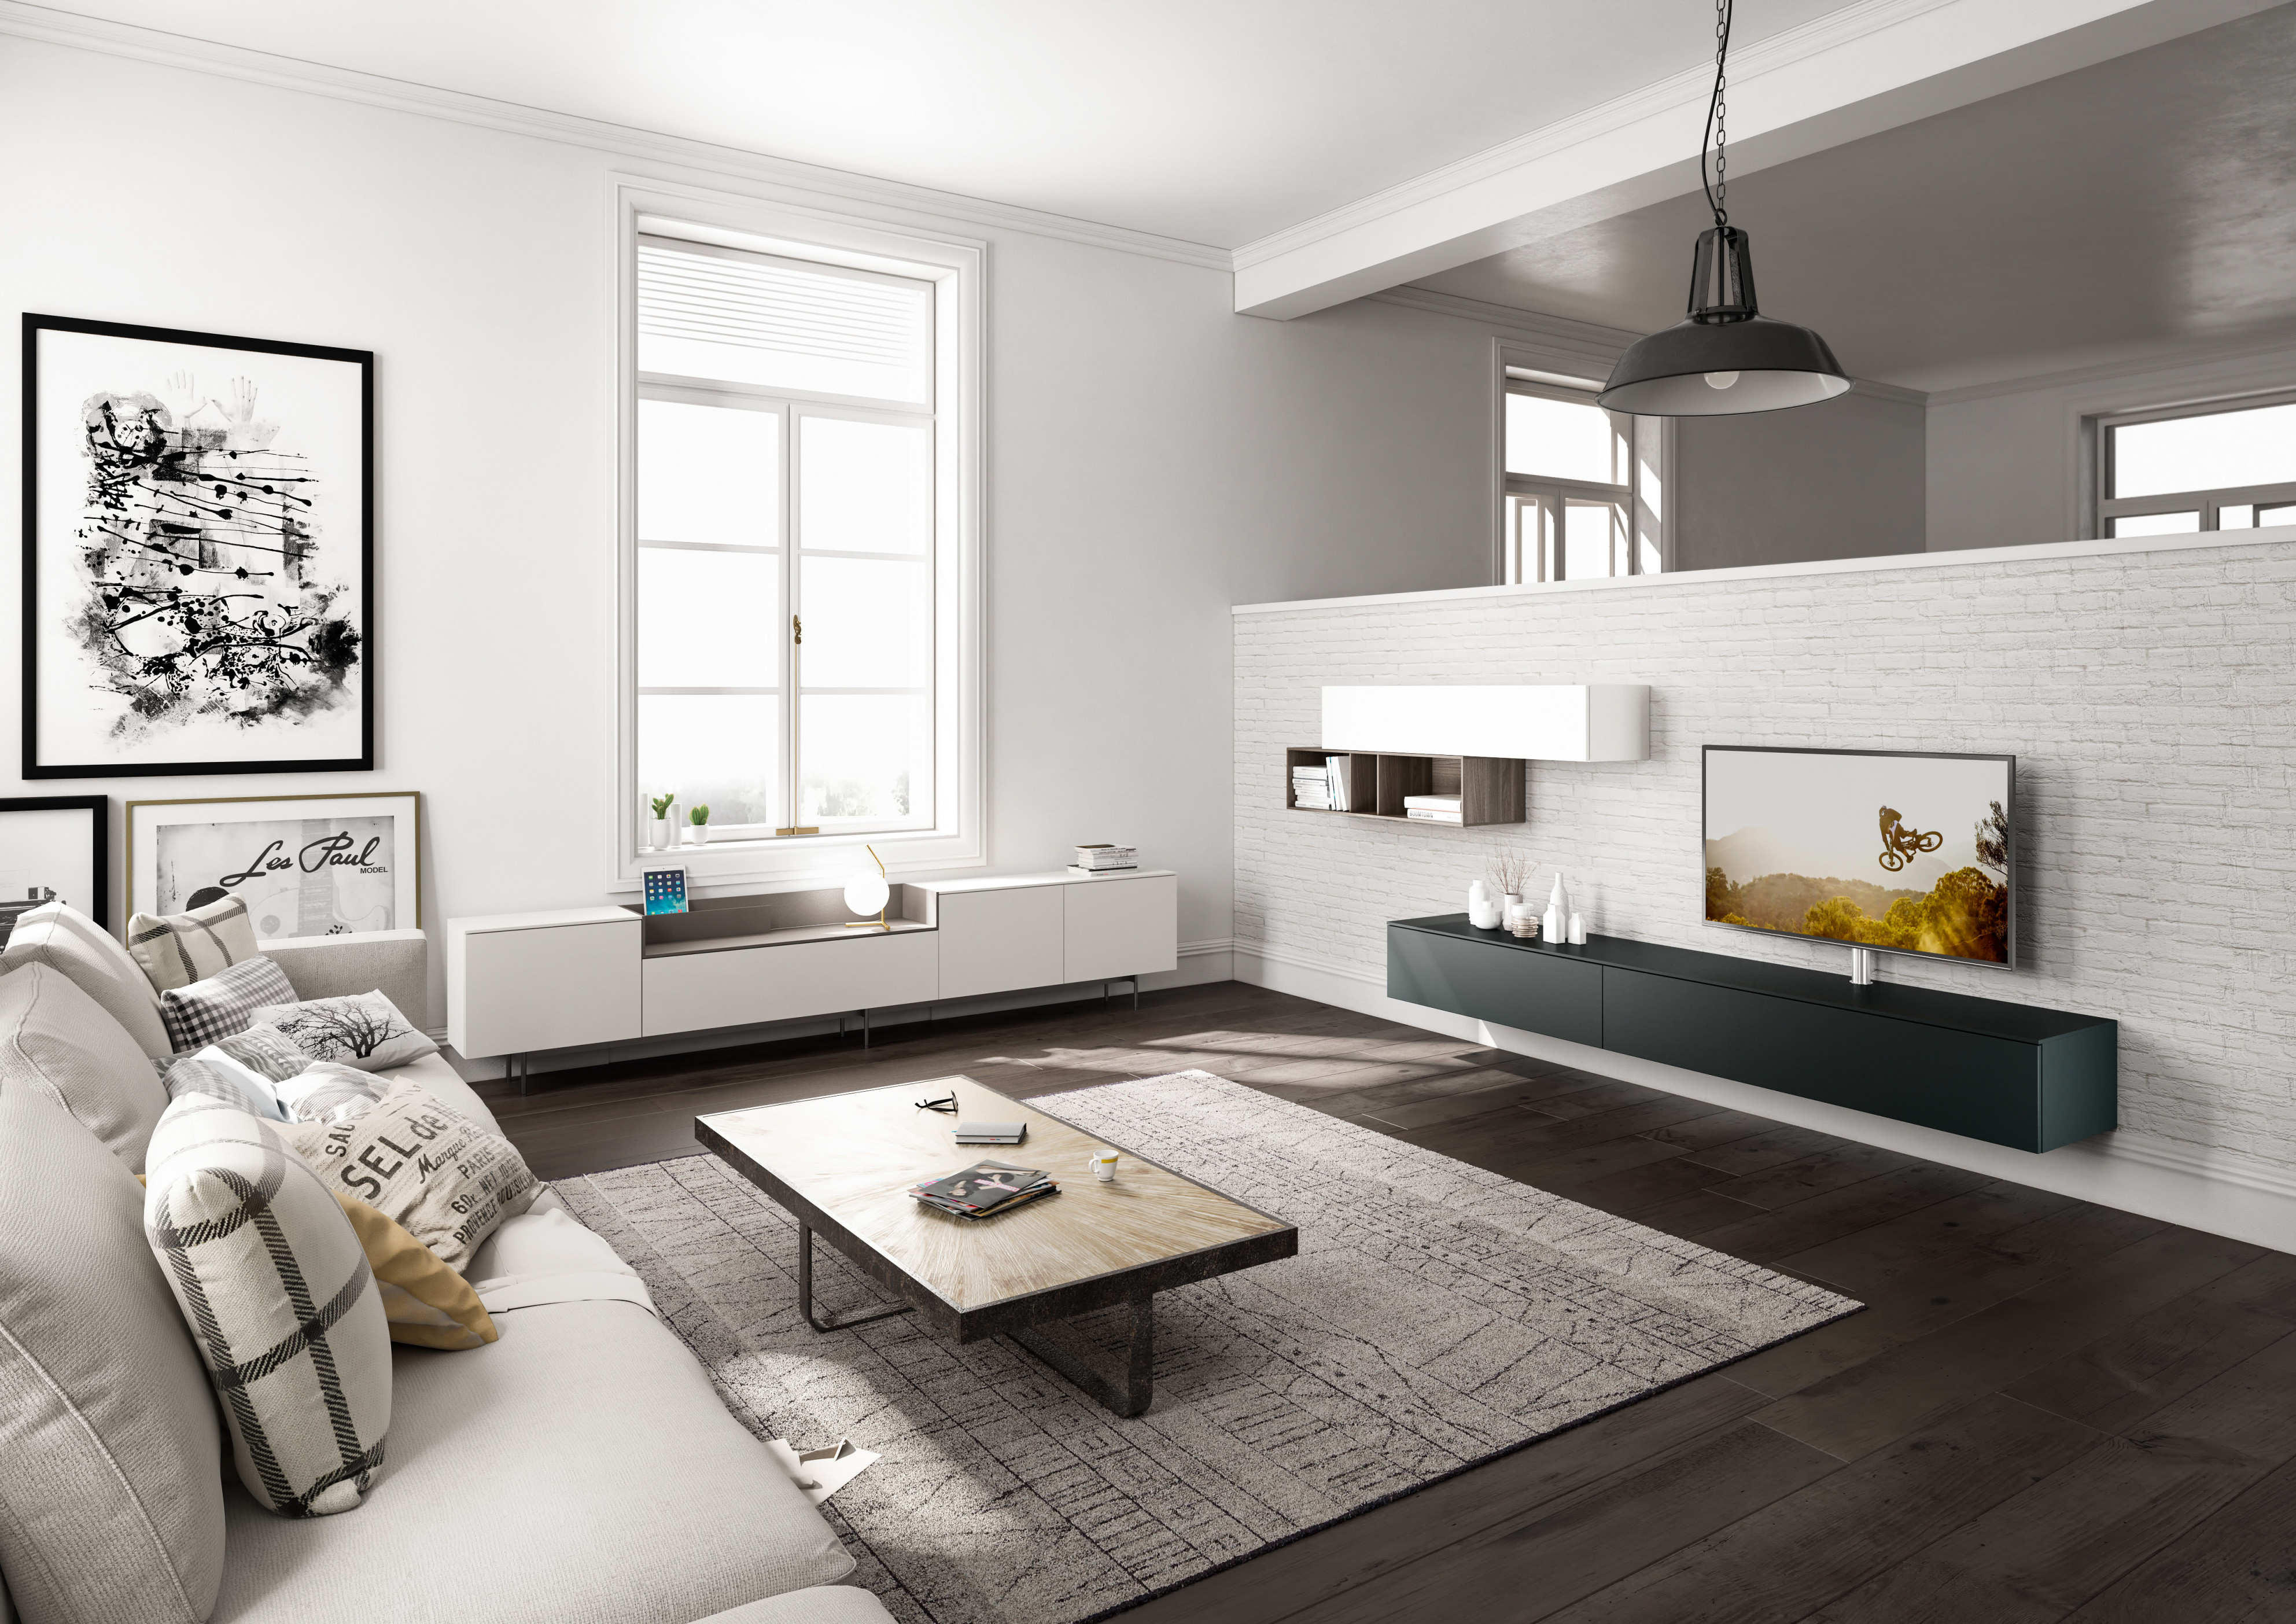 Wohnzimmergestaltung – Die Besten Ideen Tipps  Wohnbeispiele von Ideen Gestaltung Wohnzimmer Bild